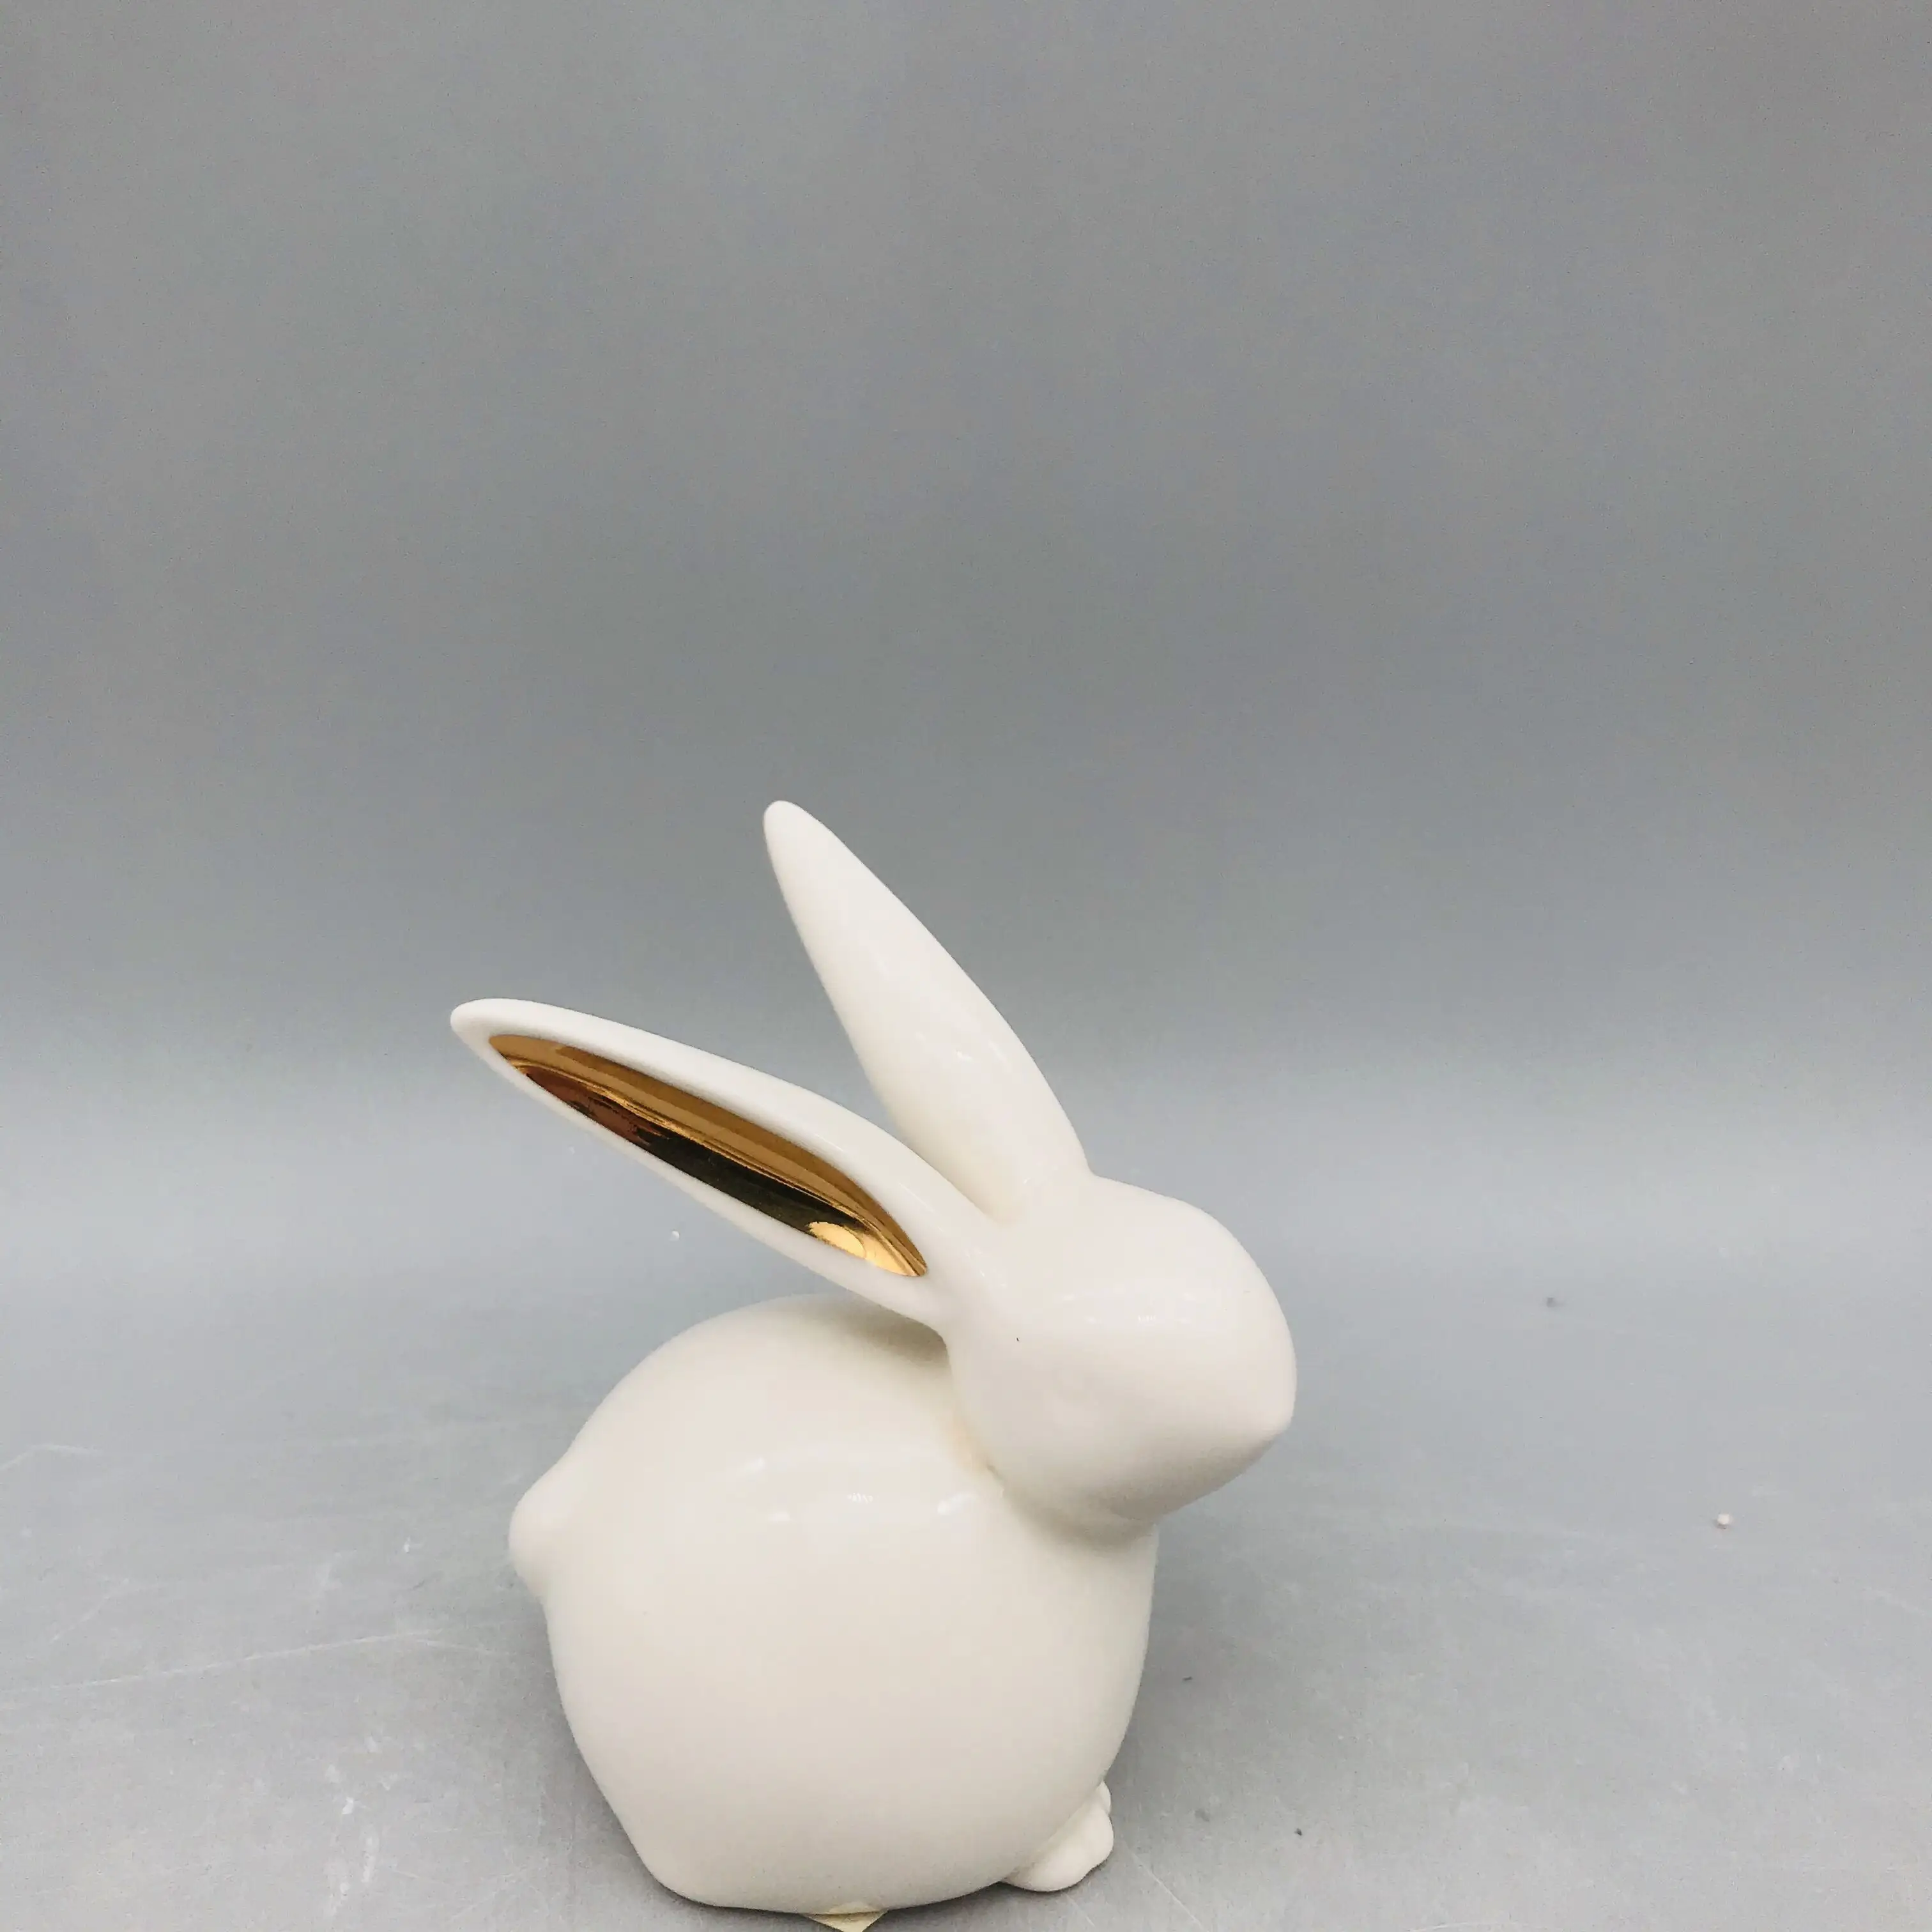 थोक छोटे आकार के सफेद चीनी मिट्टी के बरतन सिरेमिक सोने के साथ खरगोश कान